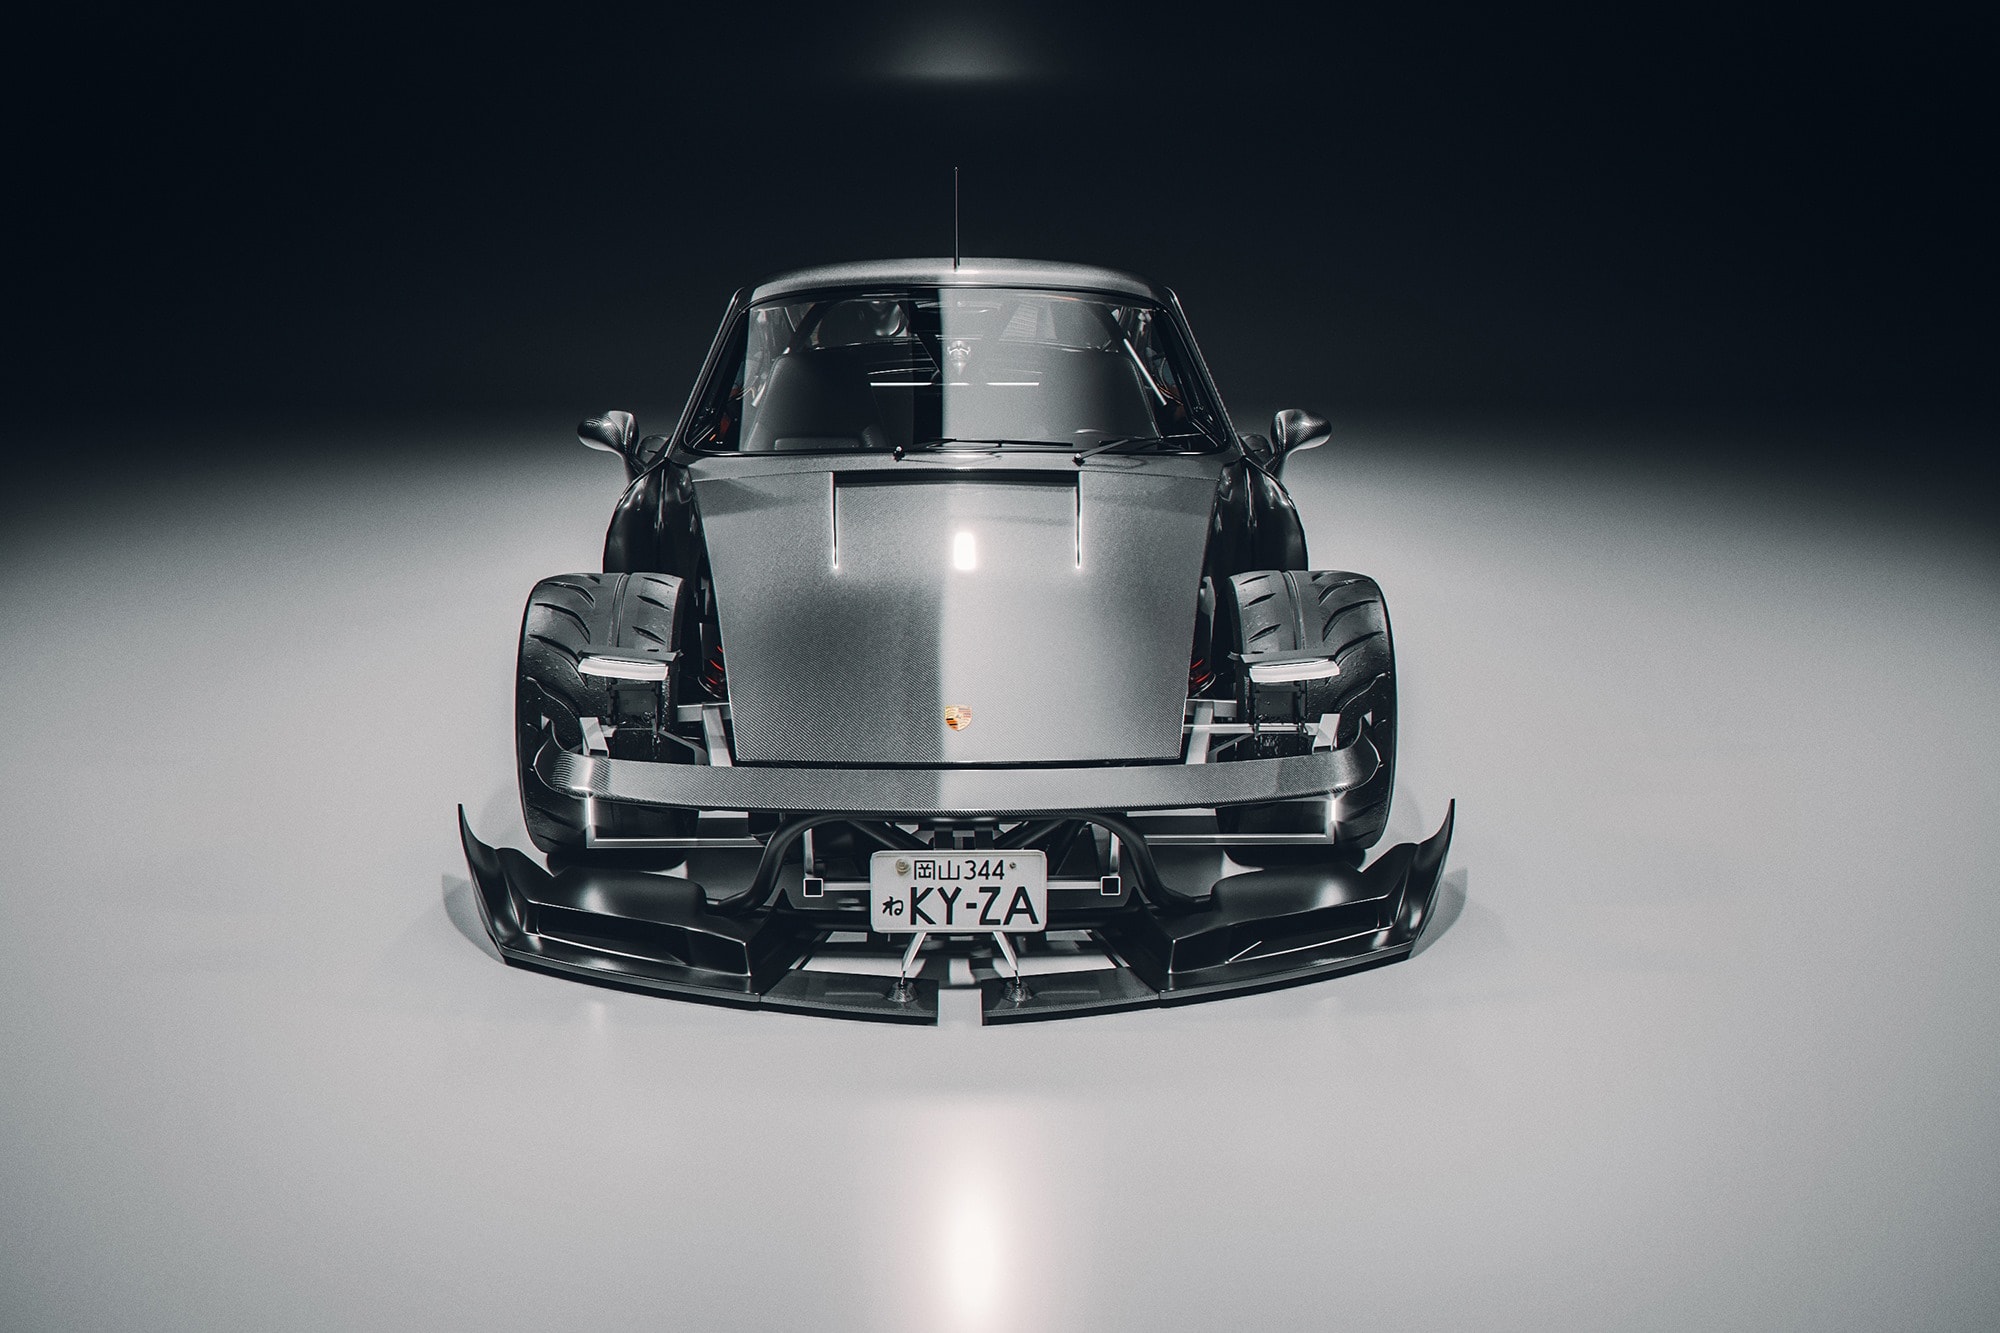 英國藝術家打造 Porsche 964 工業科幻風格豪改